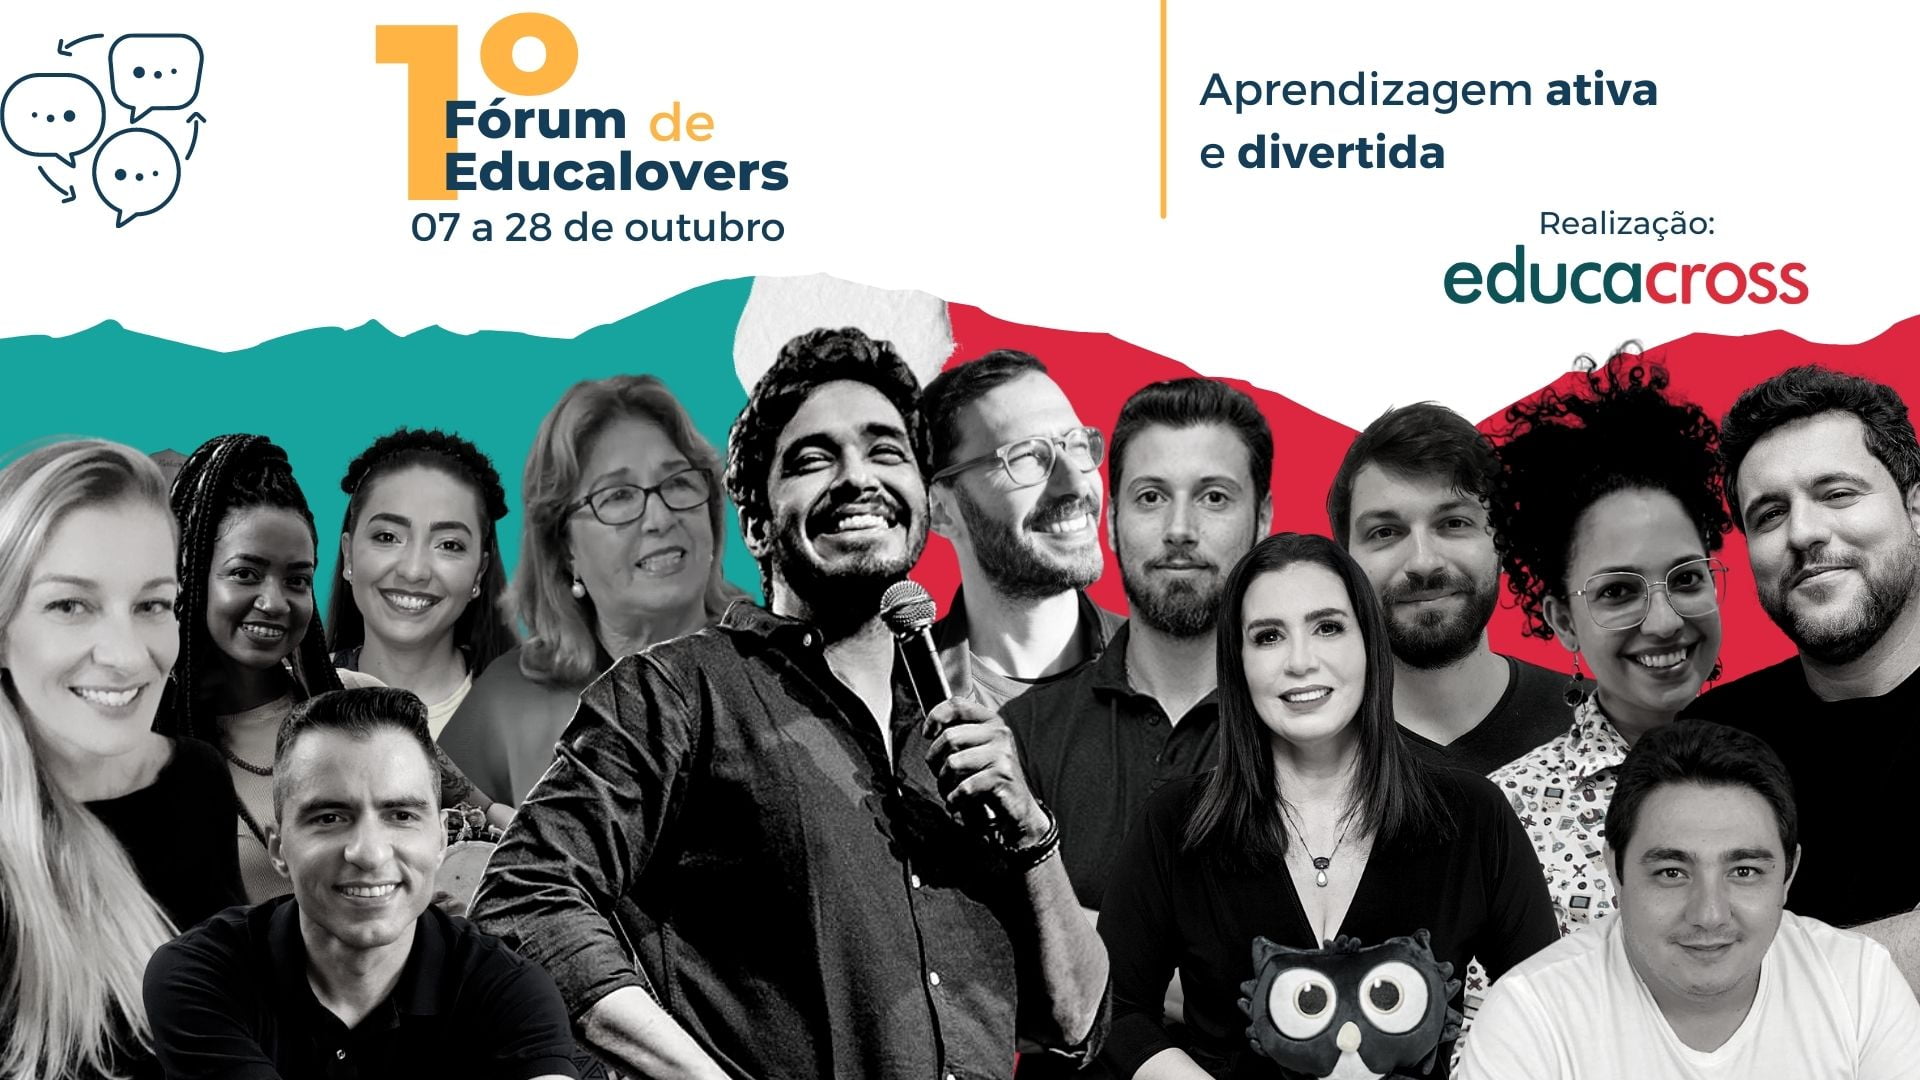 Educacross realiza 1º Fórum Educalover 2021 para promover a aprendizagem de forma lúdica